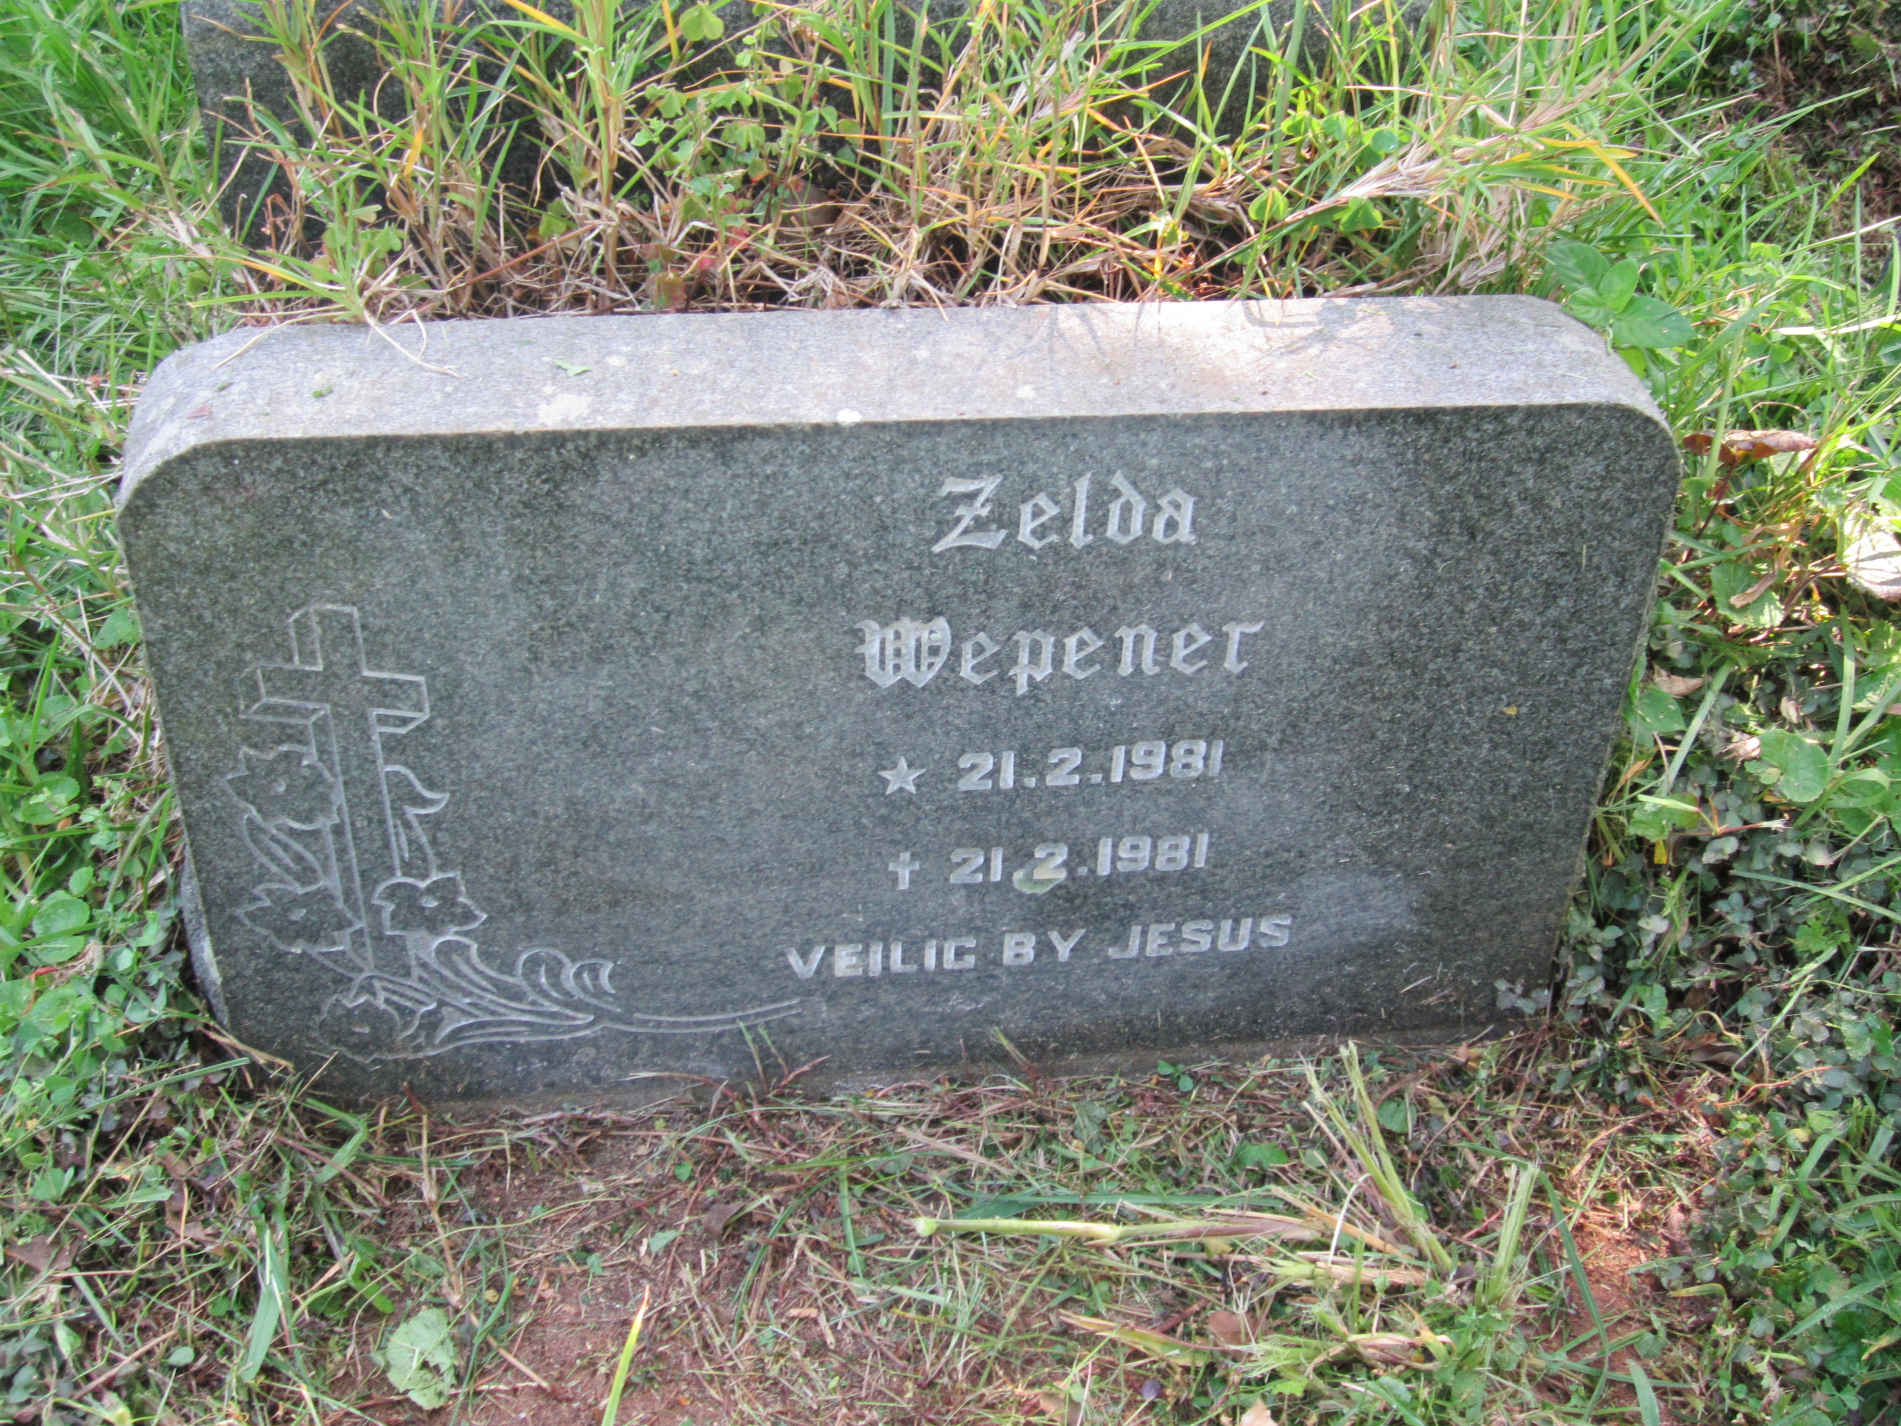 WEPENER Zelda 1981-1981